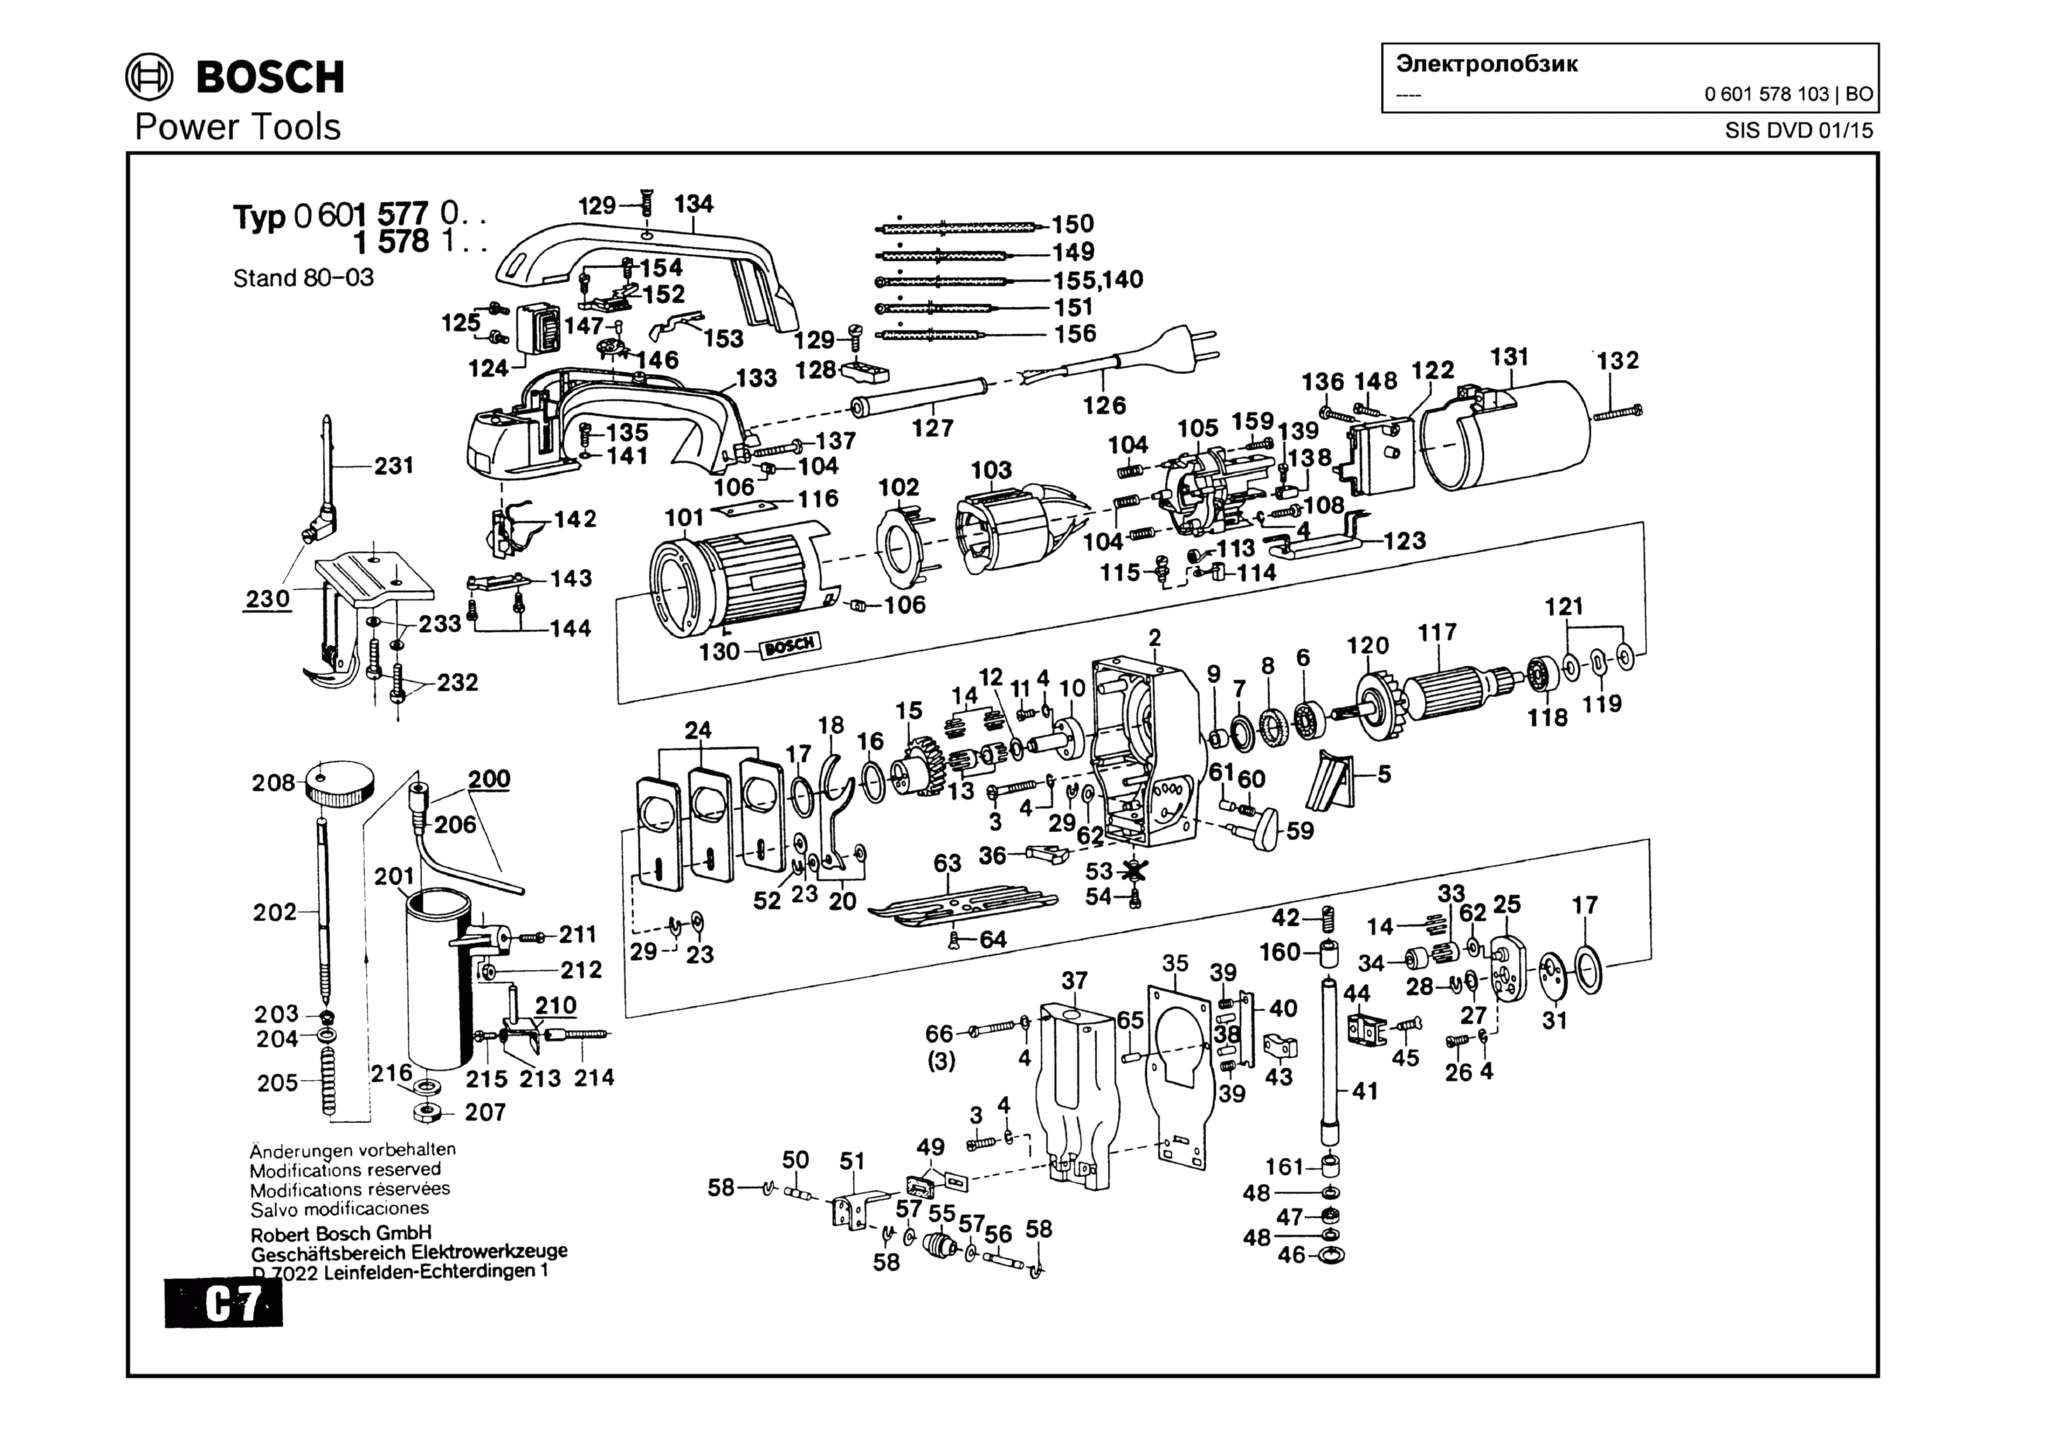 Запчасти, схема и деталировка Bosch (ТИП 0601578103)